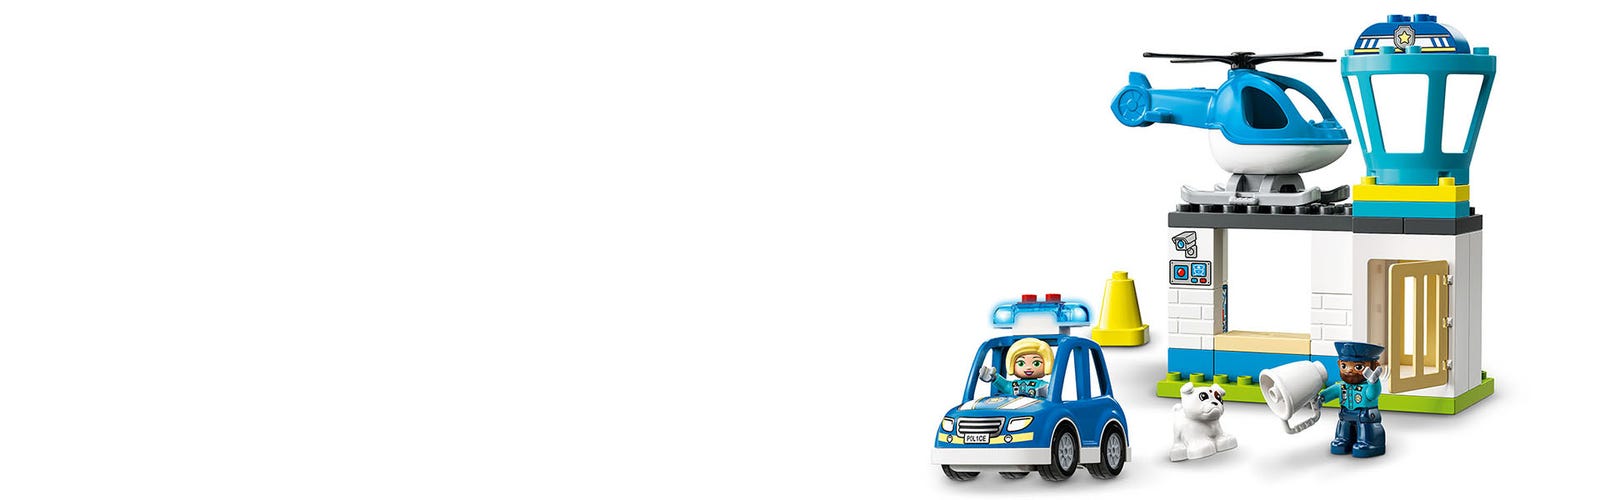 LEGO DUPLO Rescue Police Station 10959 Push & Go Juguete con luces y sirena  Plus helicóptero, juguetes de aprendizaje temprano para niños y niñas de 2